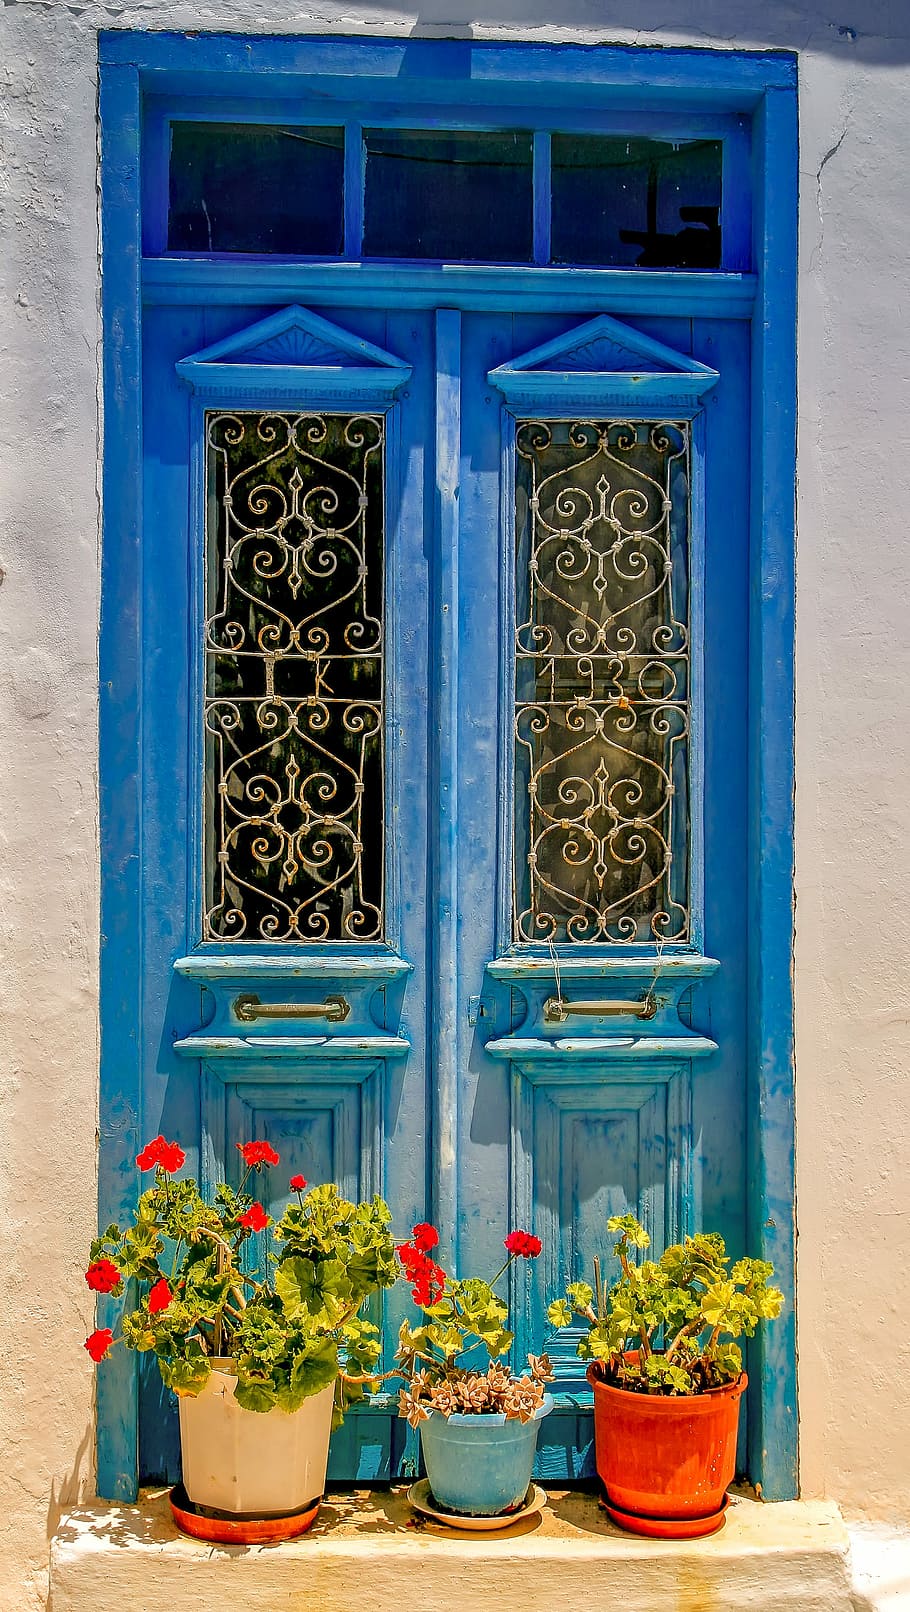 en maceta, plantas, al lado, cerrado, ventana, arquitectura, puerta, vacaciones, viajes, Grecia